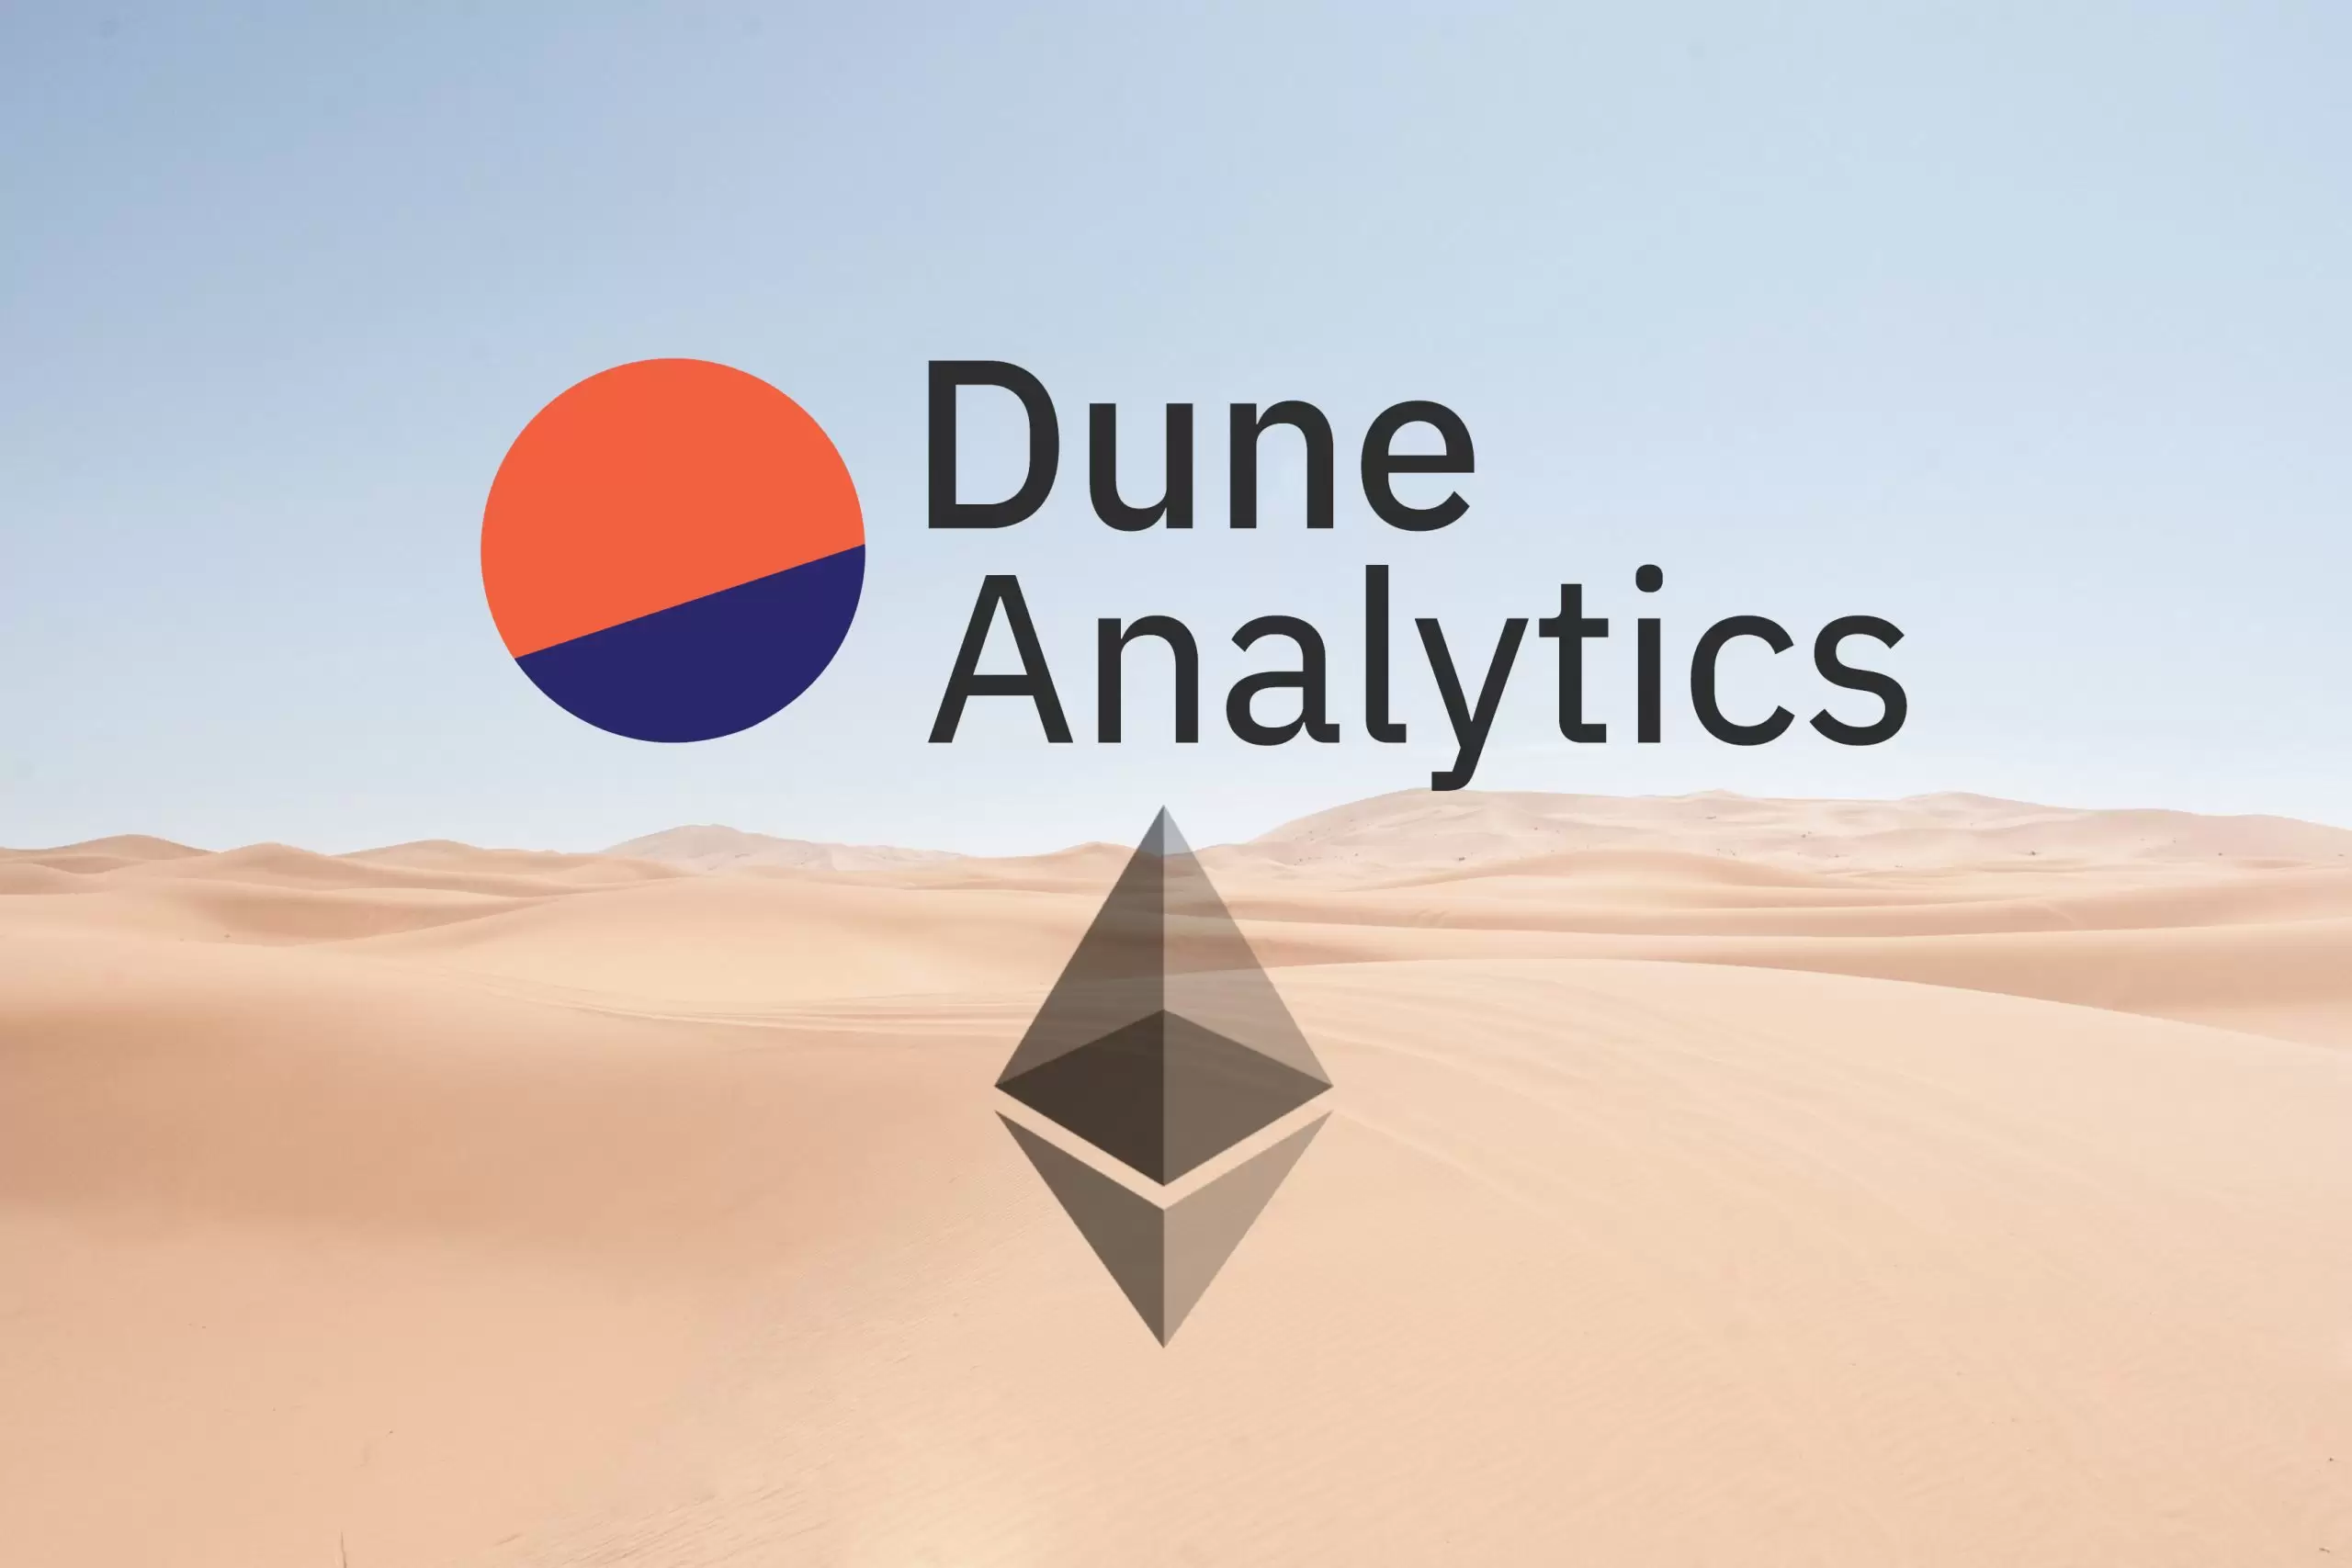 Póngase en marcha rápidamente con Dune Analytics: aprenda a escribir consultas, crear visualizaciones de datos y mucho más.